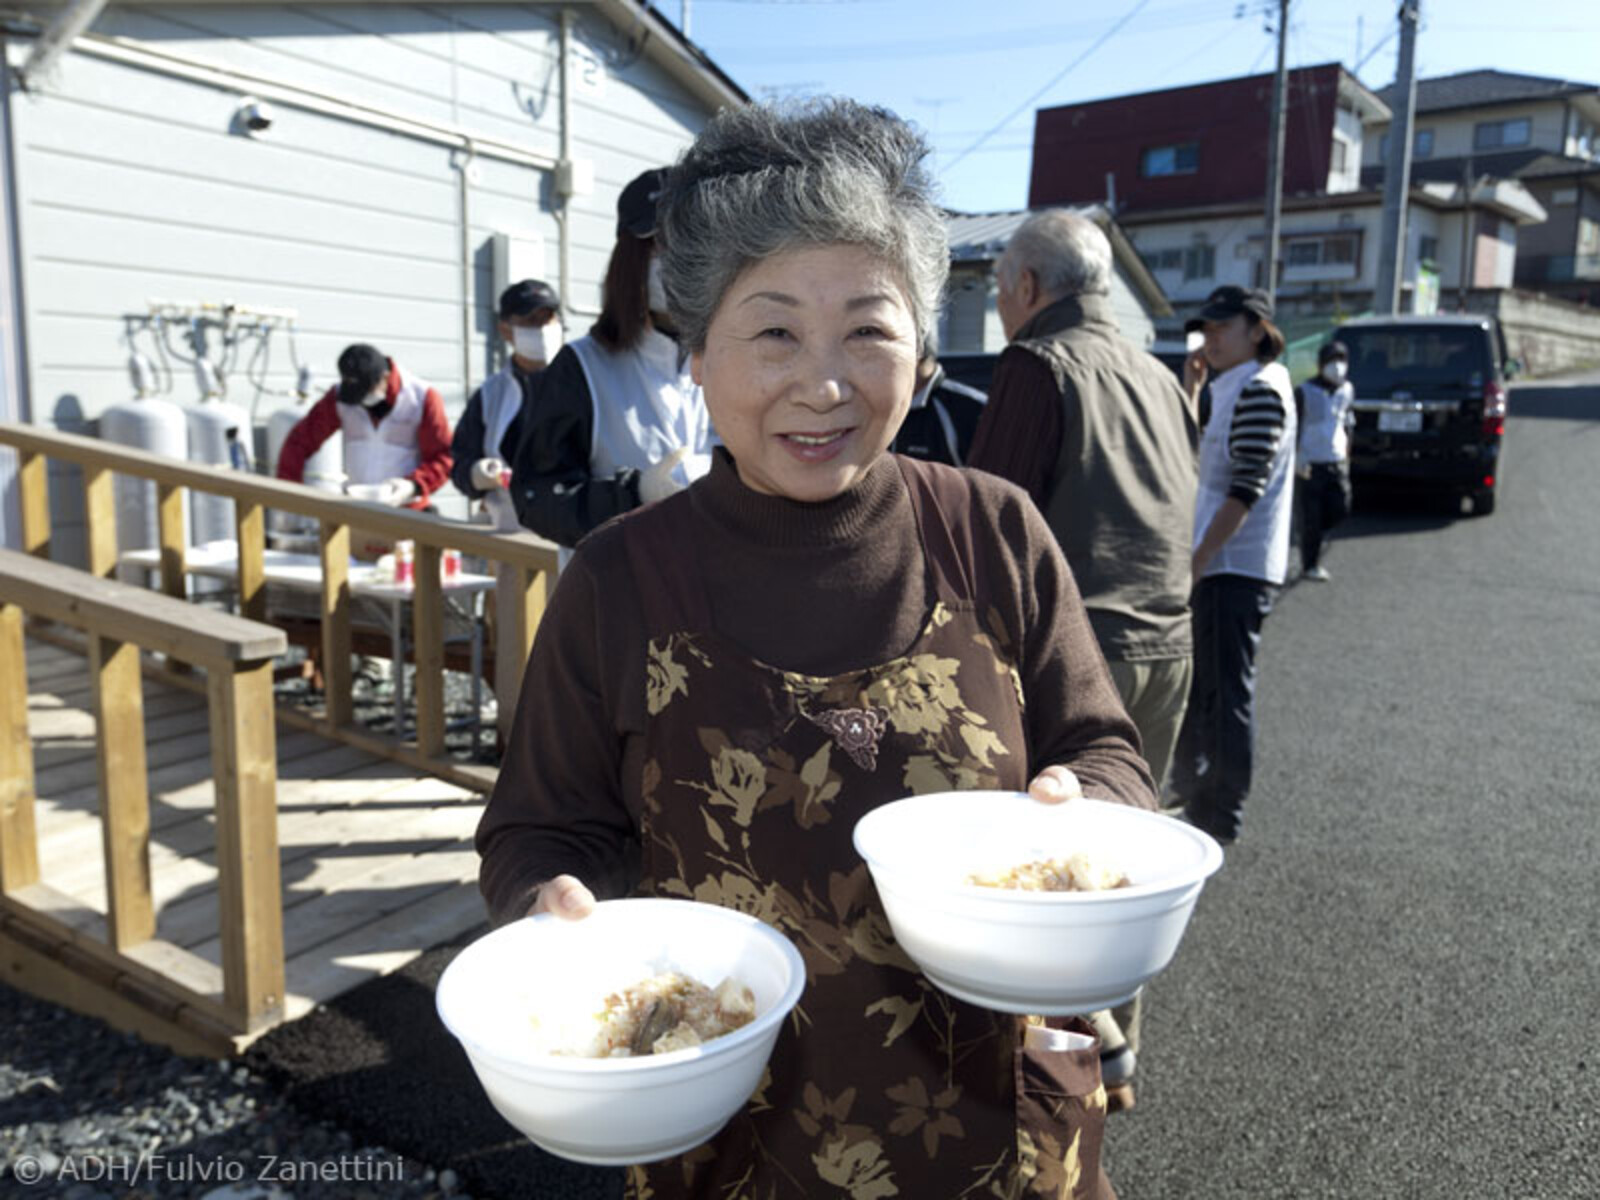 Die Menschen in Kesennuma sind sehr dankbar über die warme Mahlzeit, die sie dank arche noVa bekommen